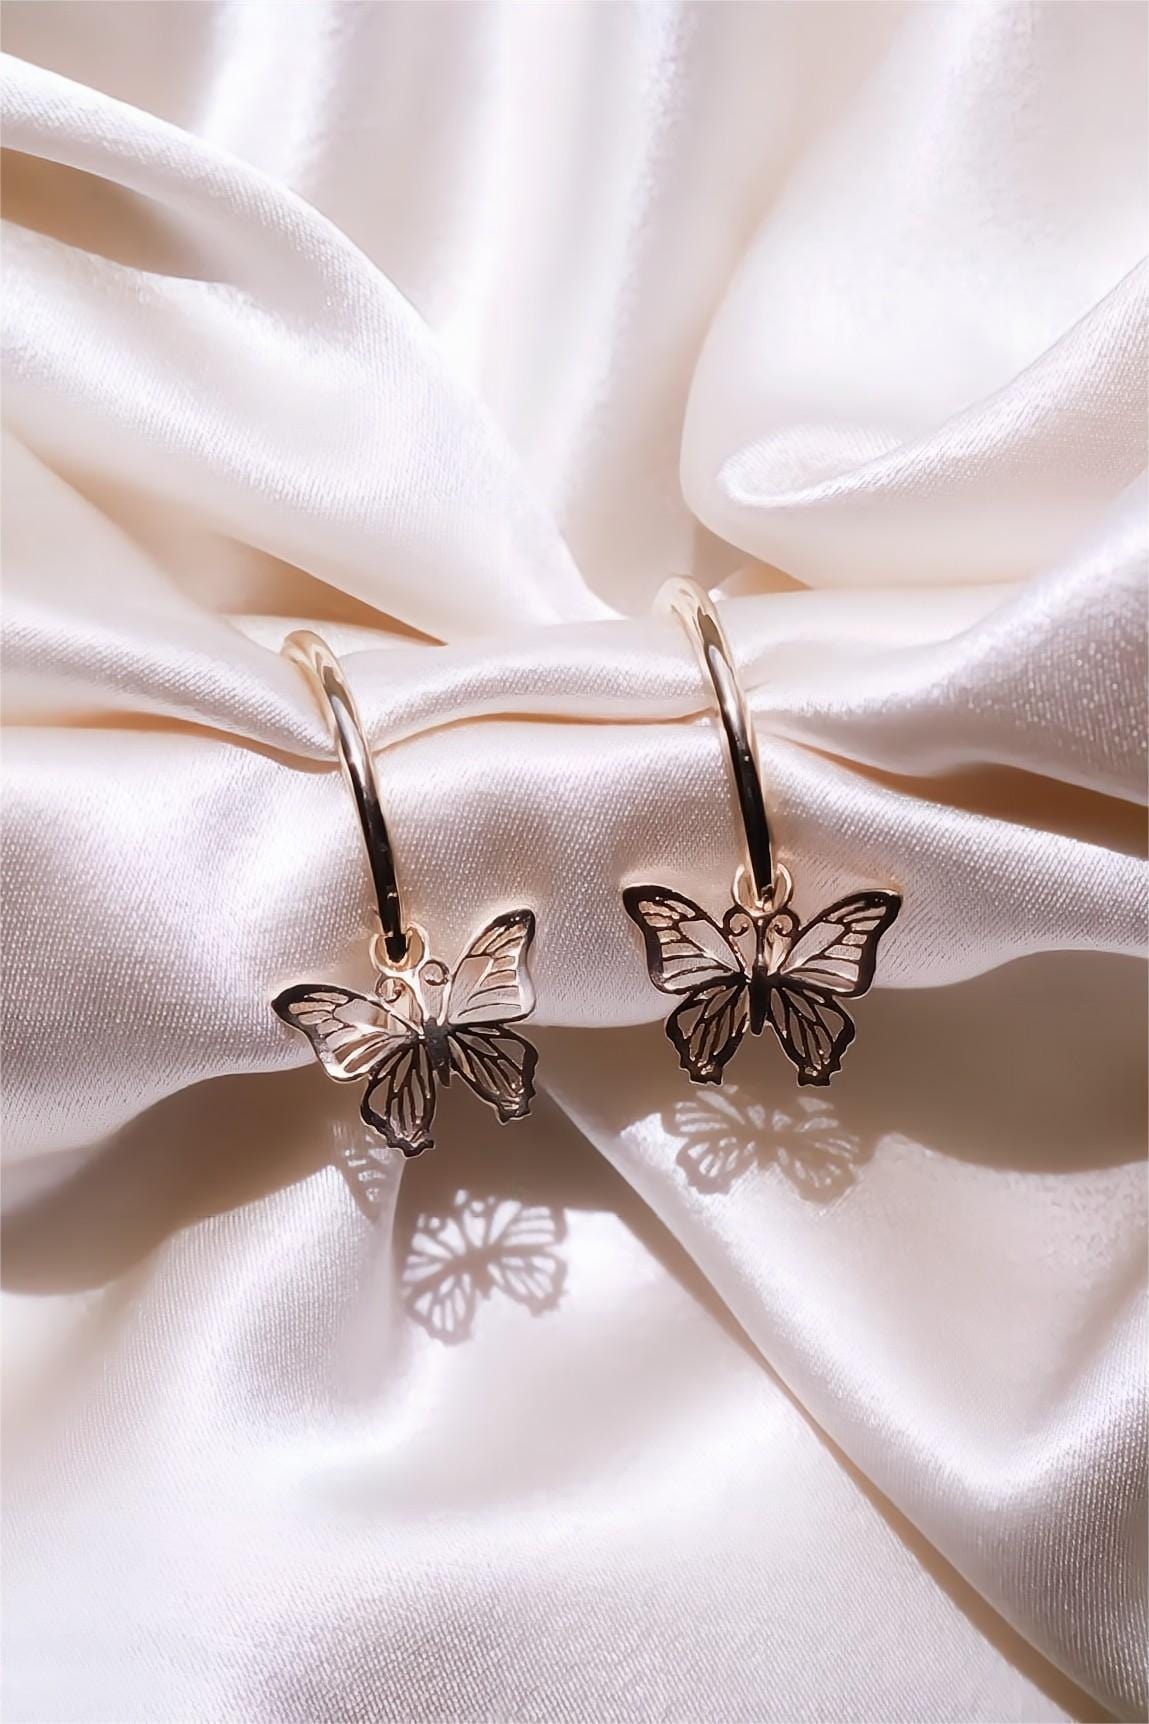 Gold Earrings Designs Girls | Gold Butterfly Earrings Studs - New Design 29  Cute - Aliexpress